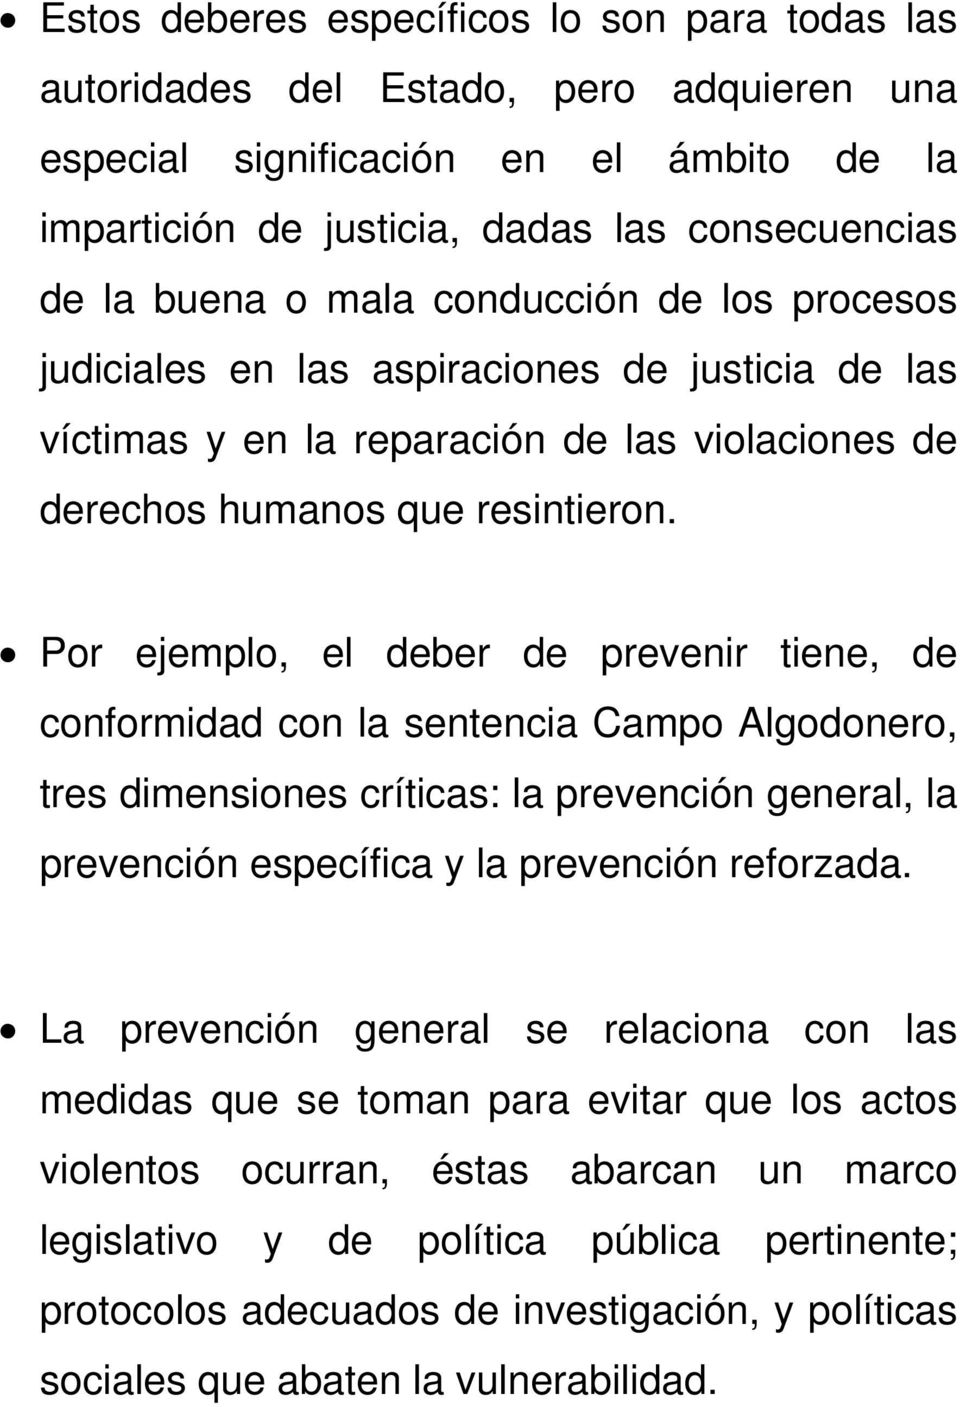 Por ejemplo, el deber de prevenir tiene, de conformidad con la sentencia Campo Algodonero, tres dimensiones críticas: la prevención general, la prevención específica y la prevención reforzada.